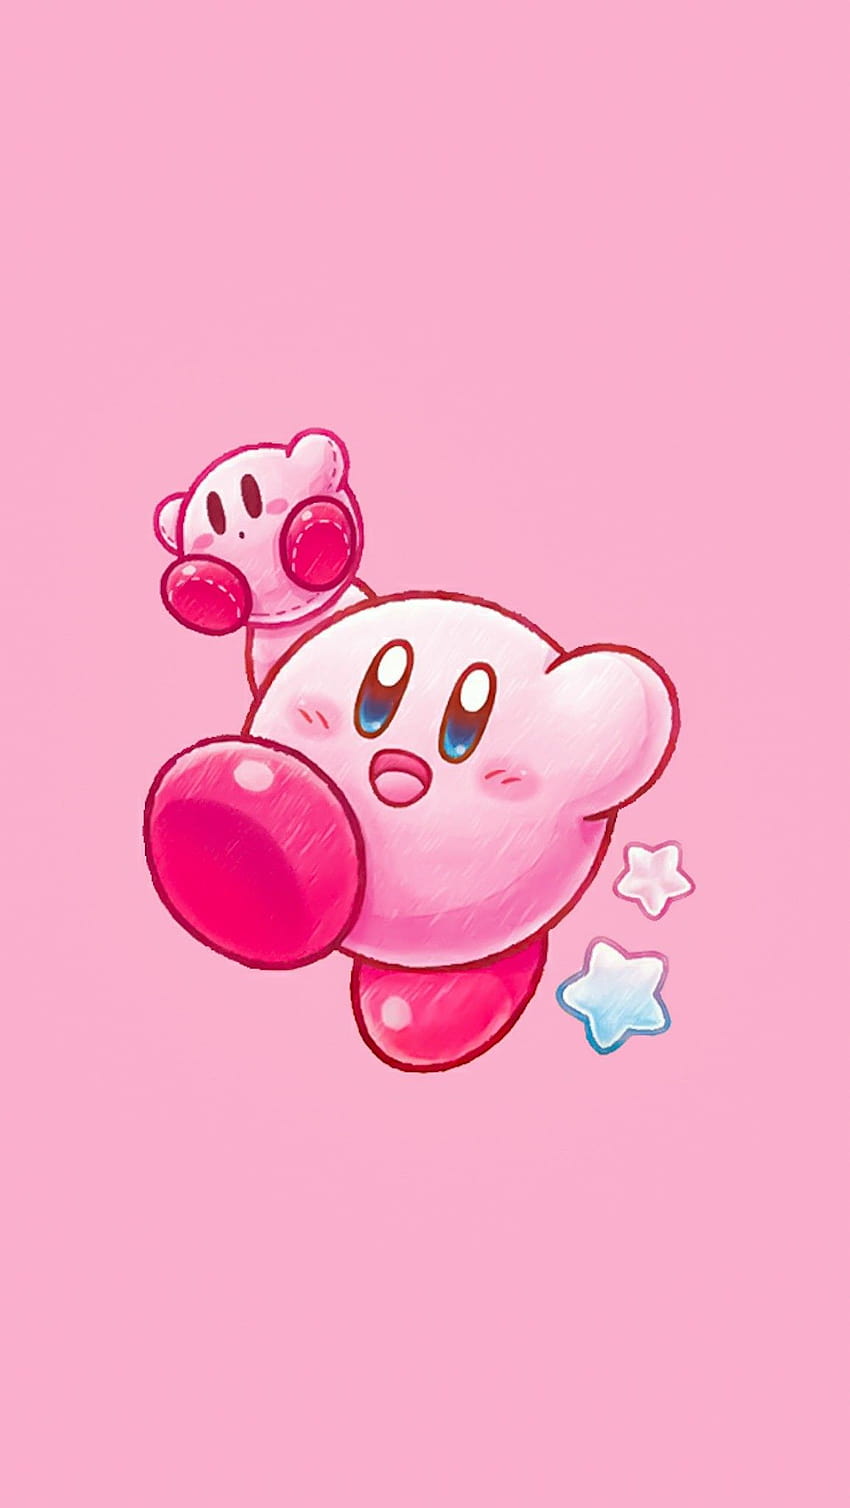 Hình nền điện thoại Kirby là điều tuyệt vời để bạn có thể tận hưởng hình ảnh chibi nhỏ nhắn của chú mèo hồng đáng yêu. Tìm hiểu thêm về hình ảnh này để trang trí cho chiếc điện thoại của bạn thêm phần đáng yêu.